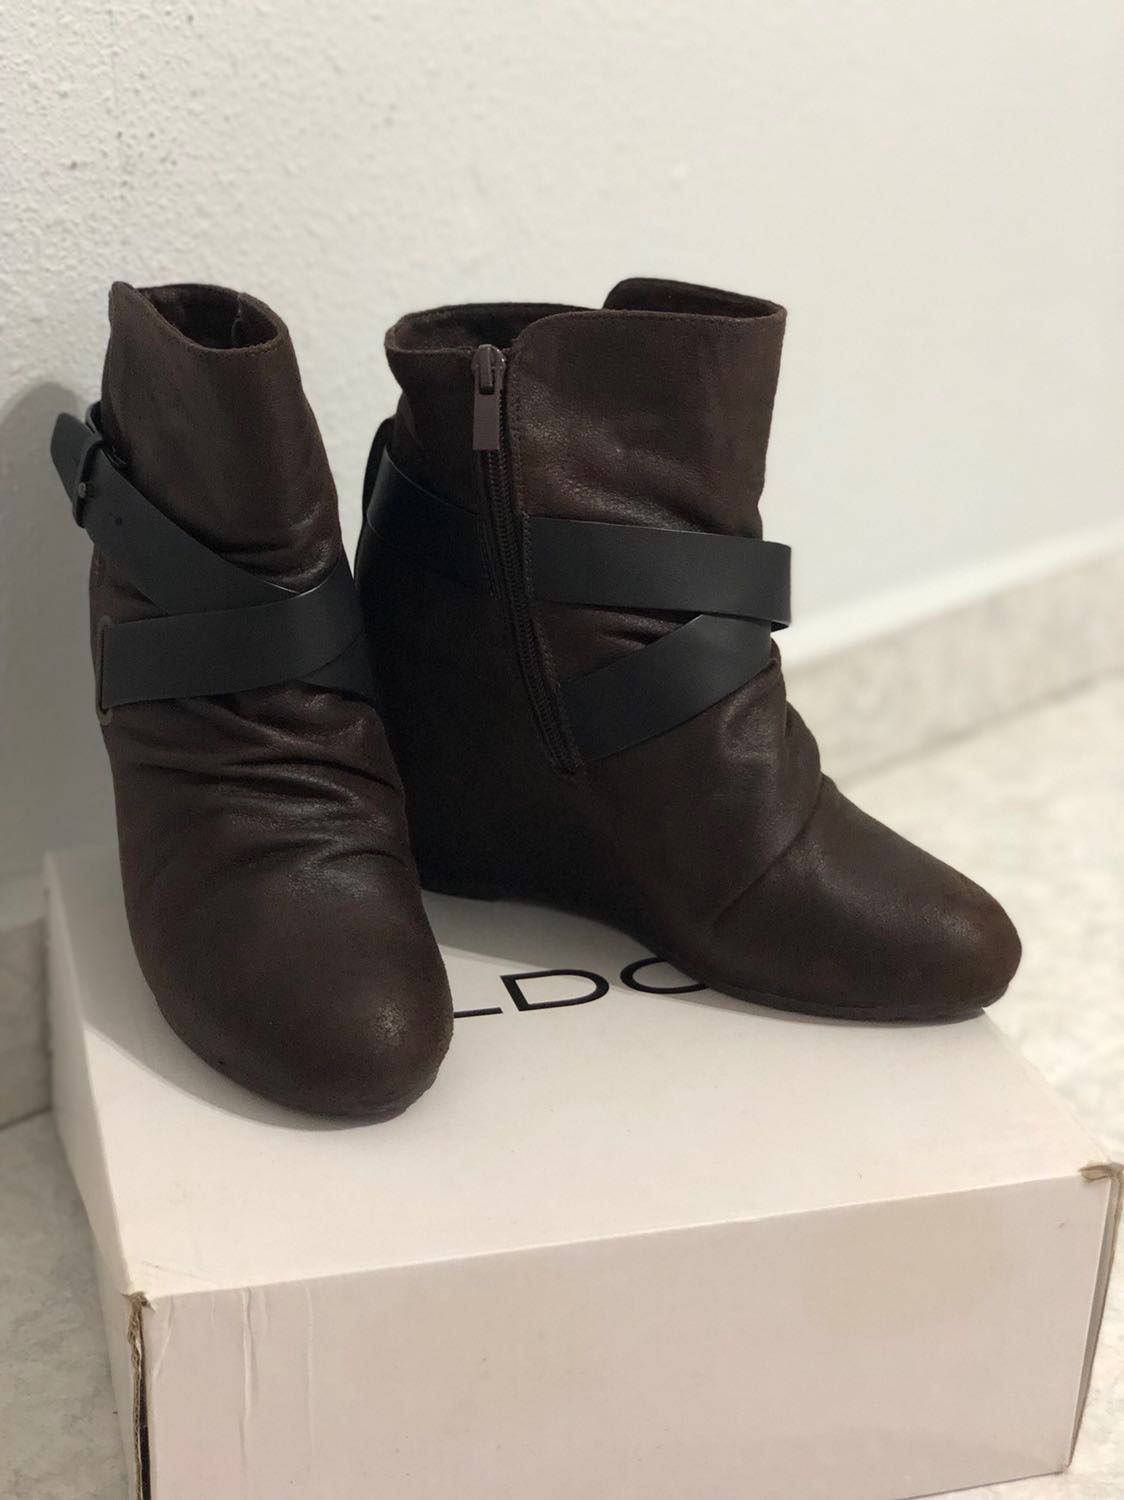 ALDO Women's Suede/Leather Boots, Women 